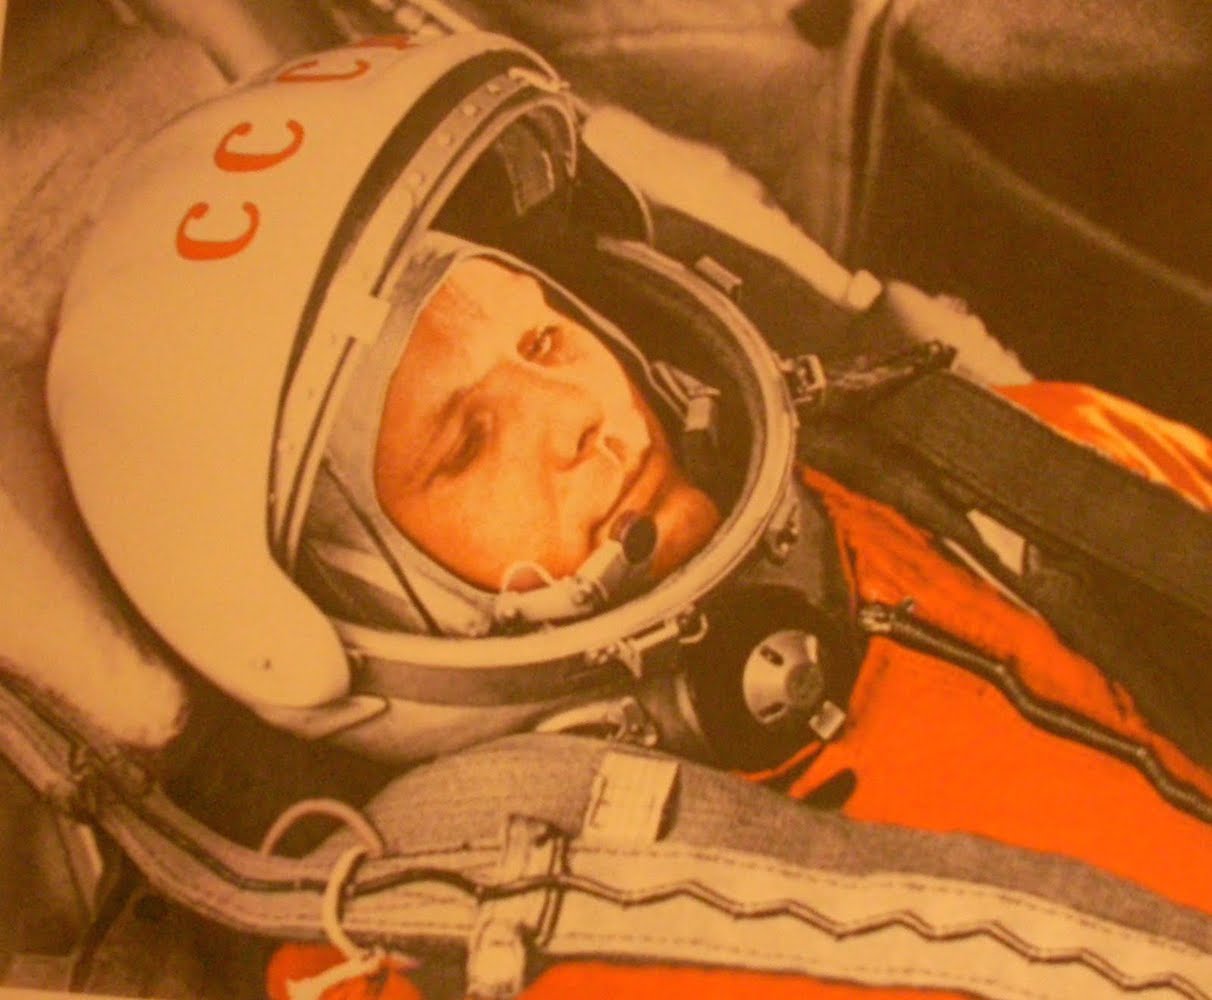 Yuri Gagarin (1961)